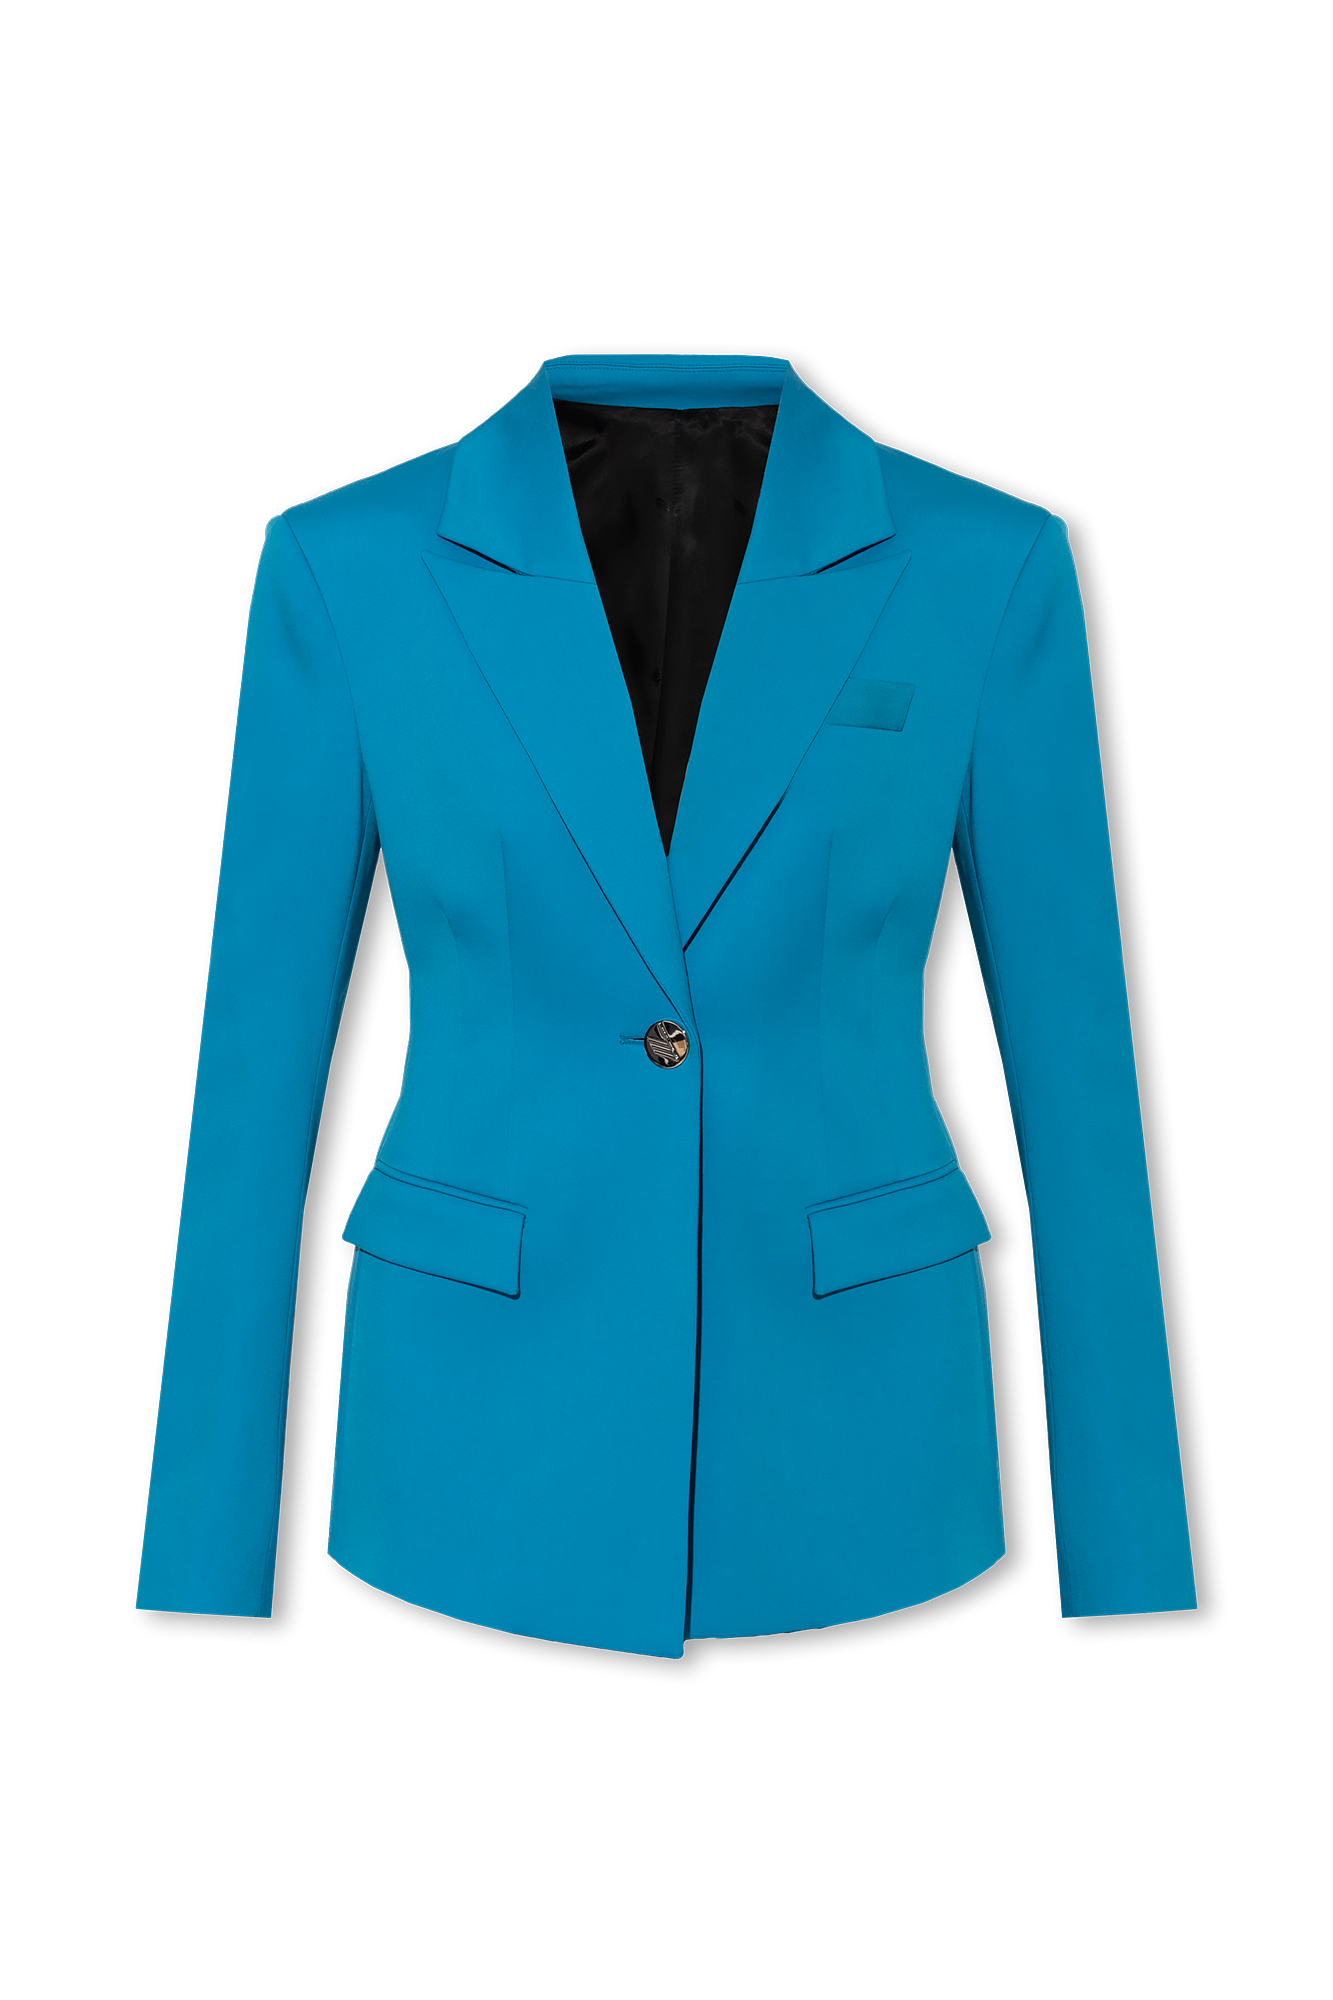 The Attico ‘Blue’ single-breasted blazer